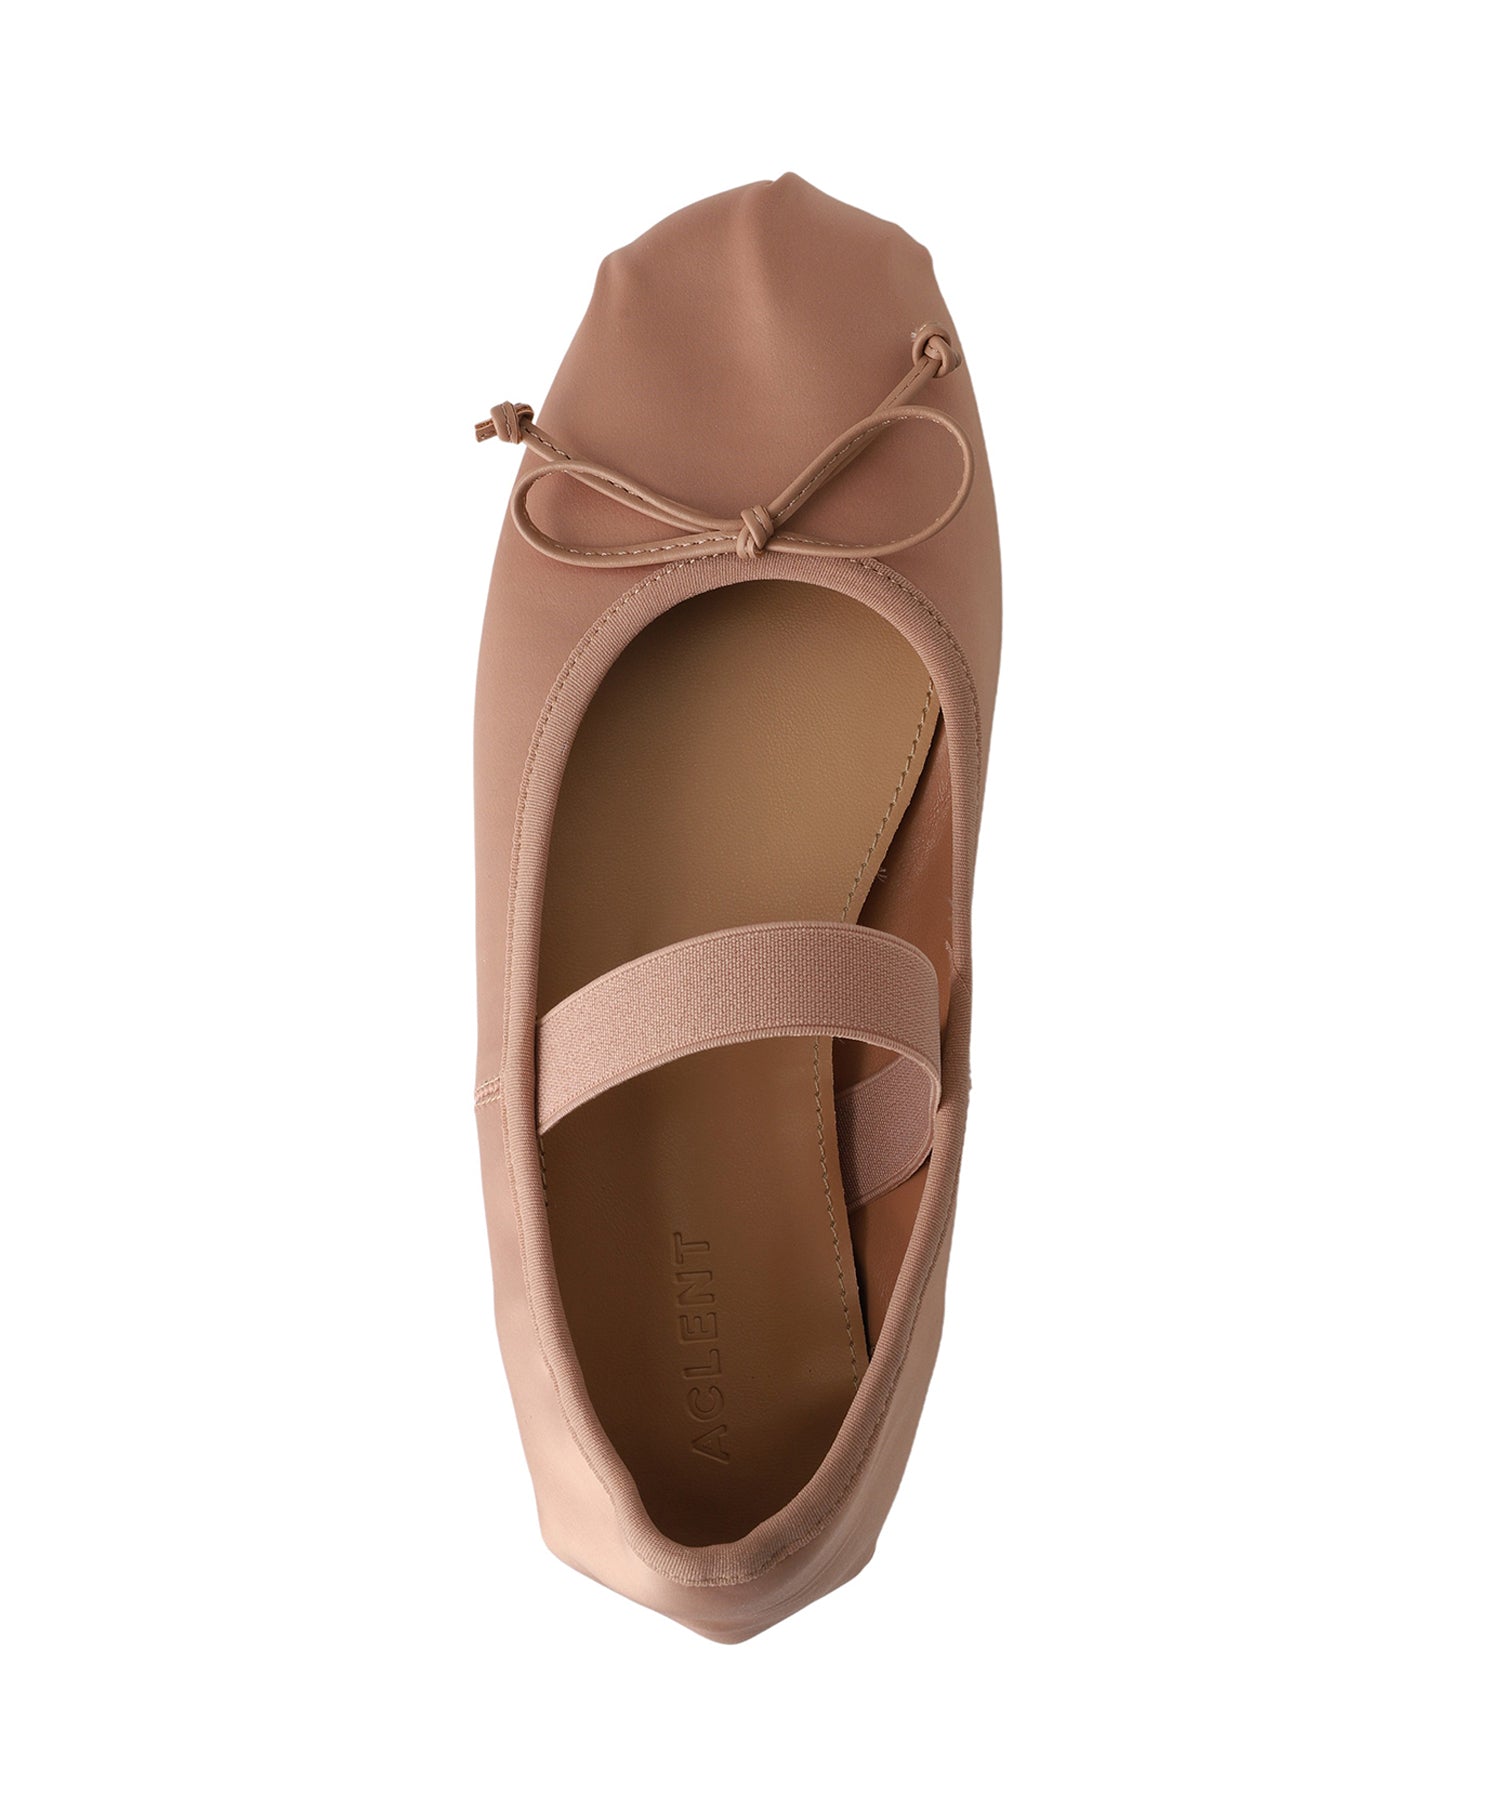 Ribbon ballet shoes